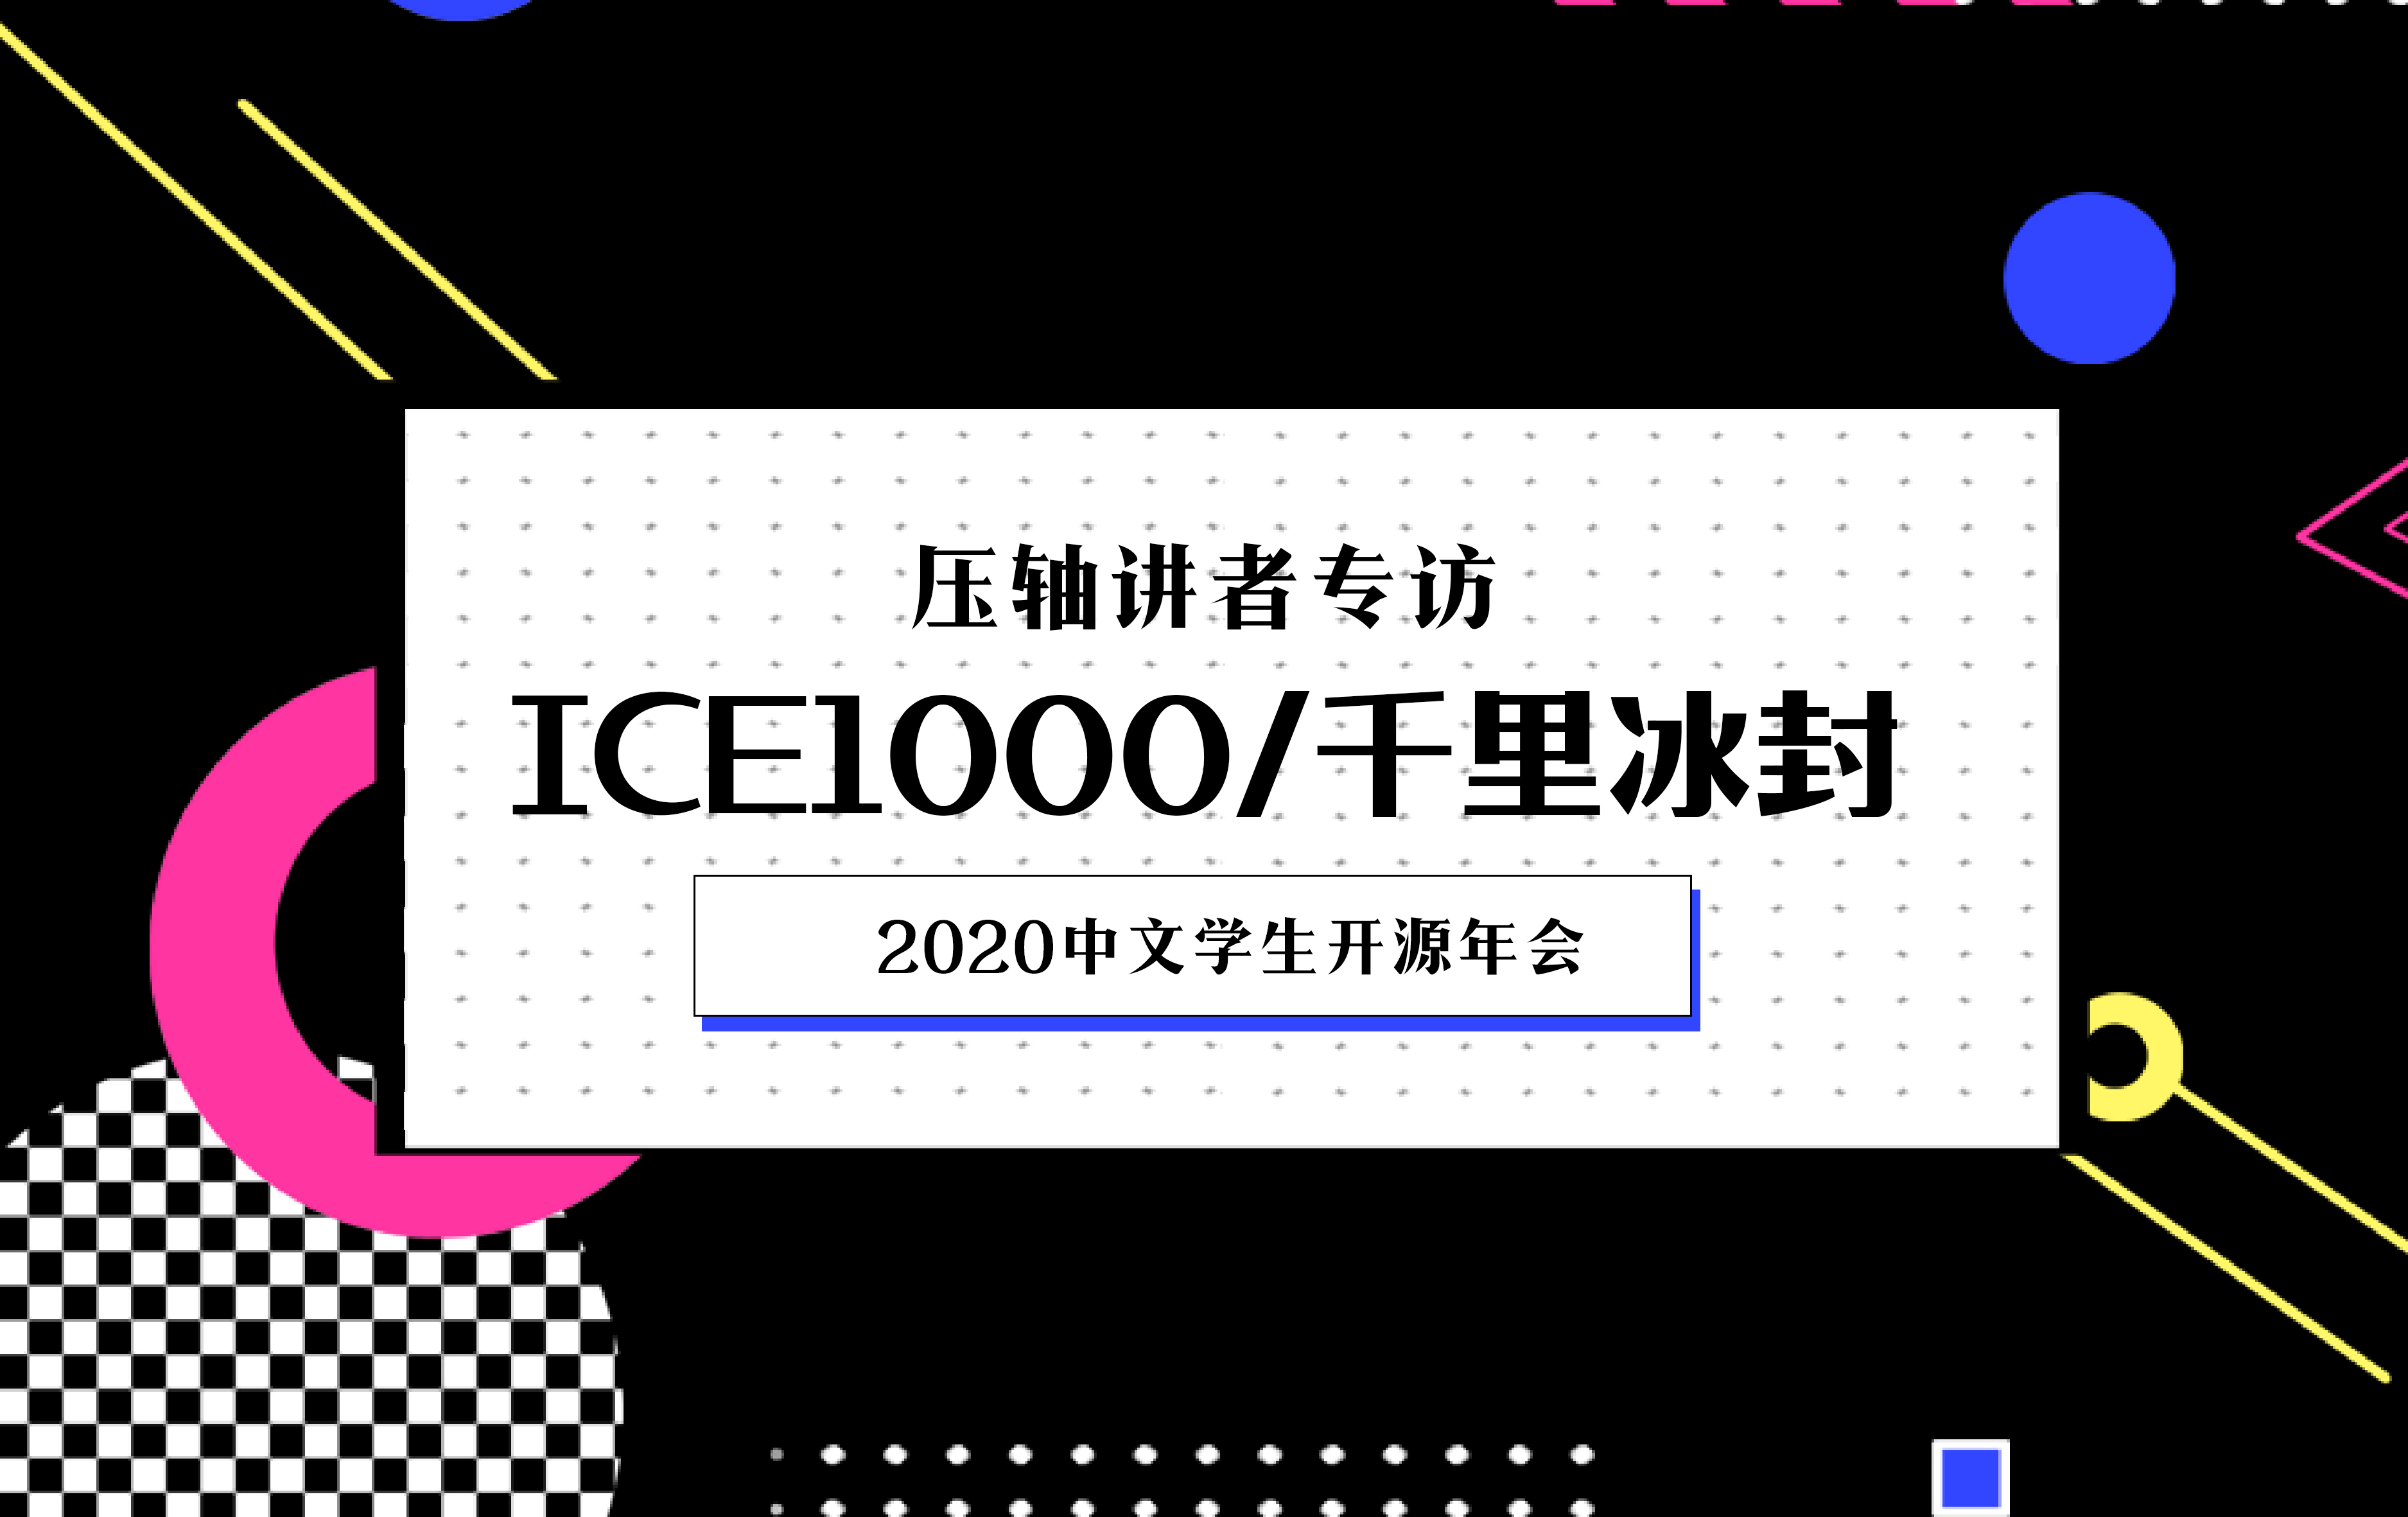 2020中文学生开源年会压轴讲者专访：ICE1000/千里冰封